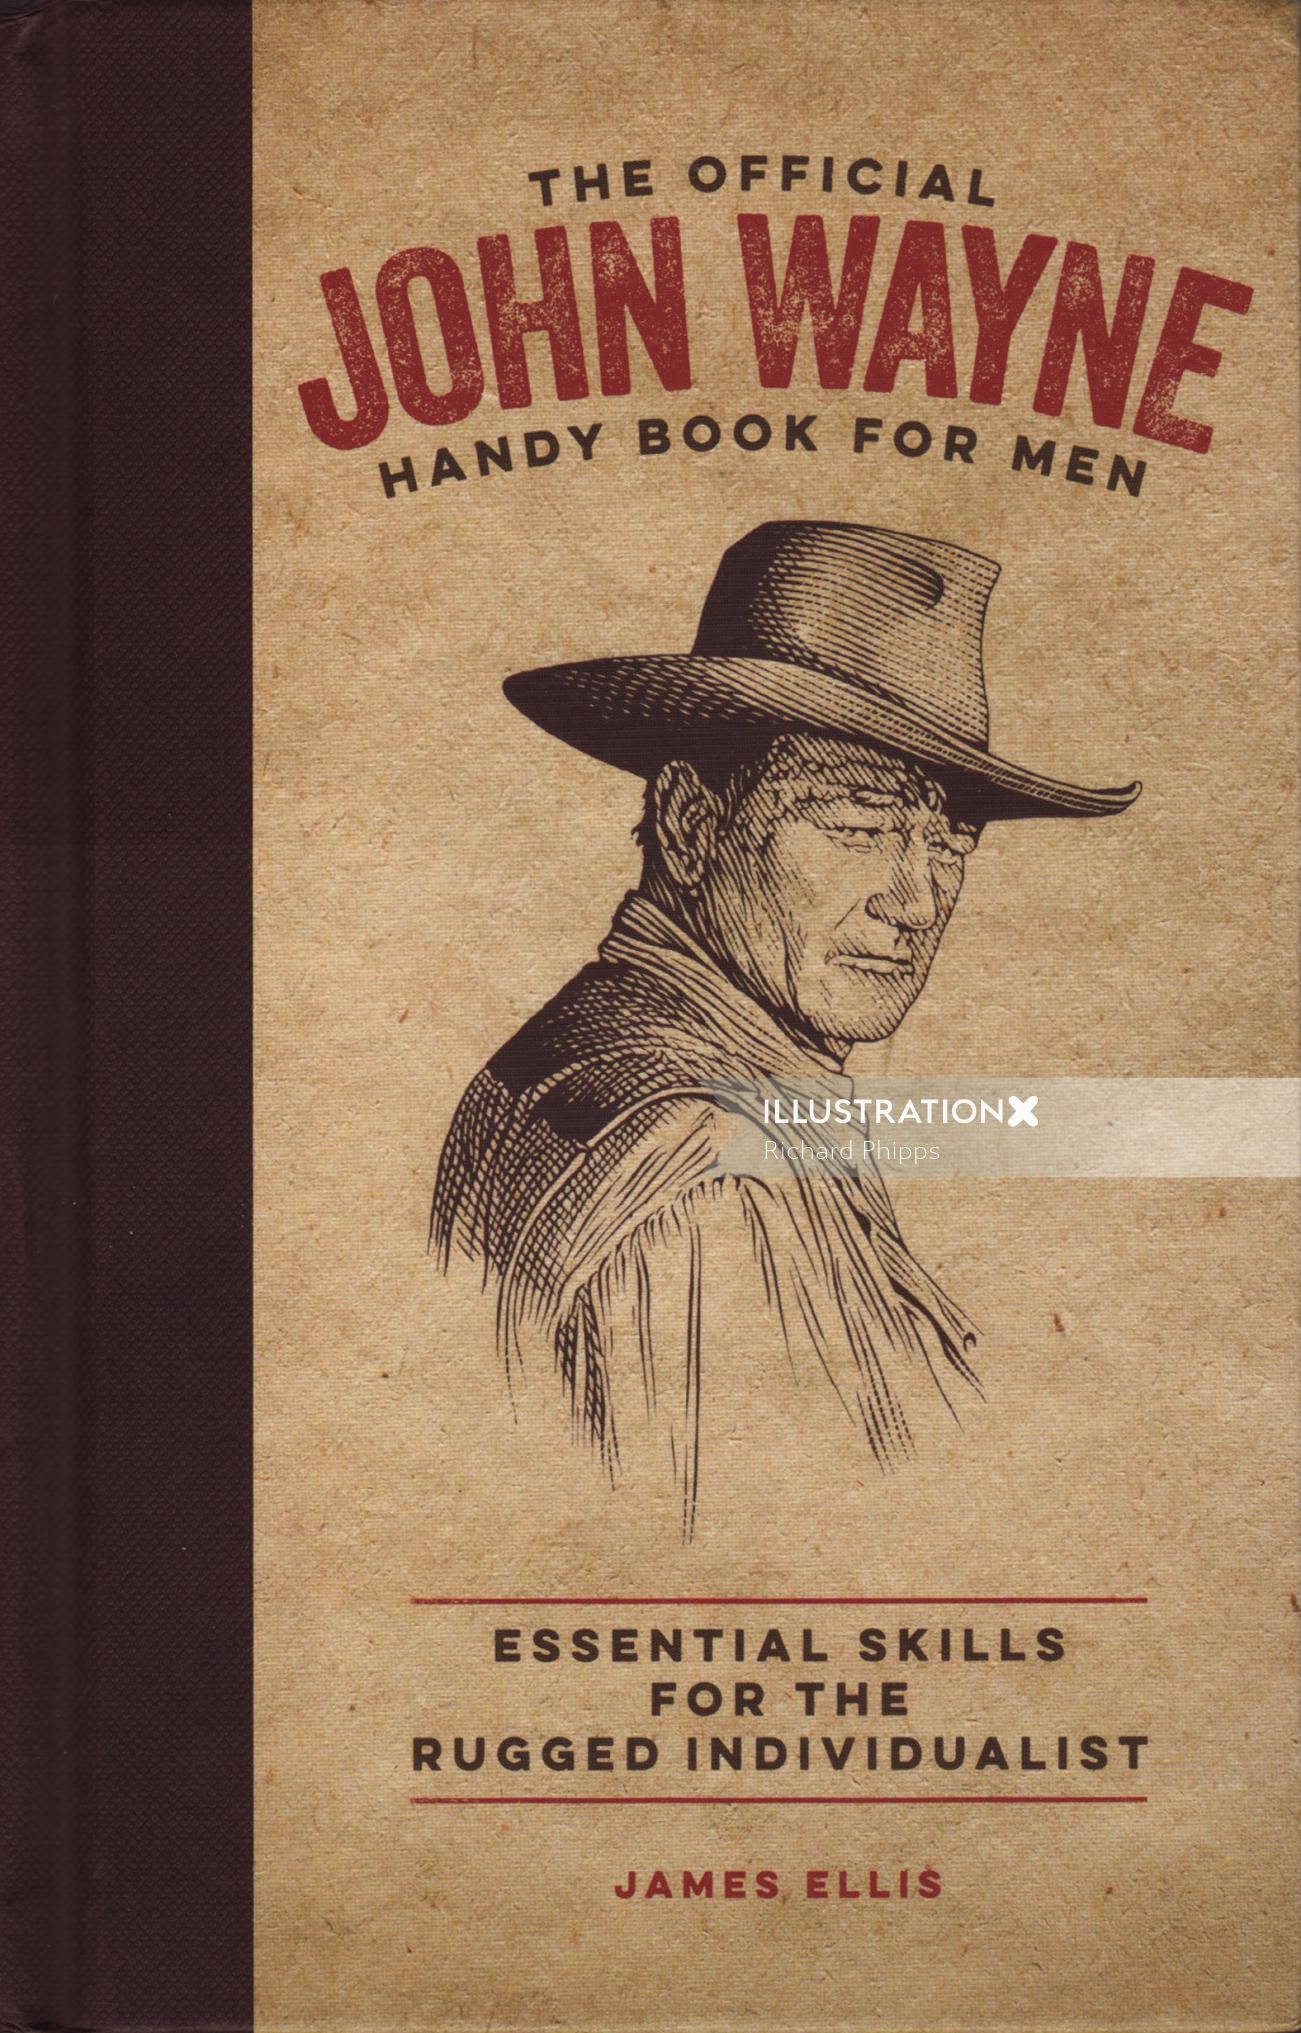 「The Official John Wayne Handy Book for Men」の表紙デザイン